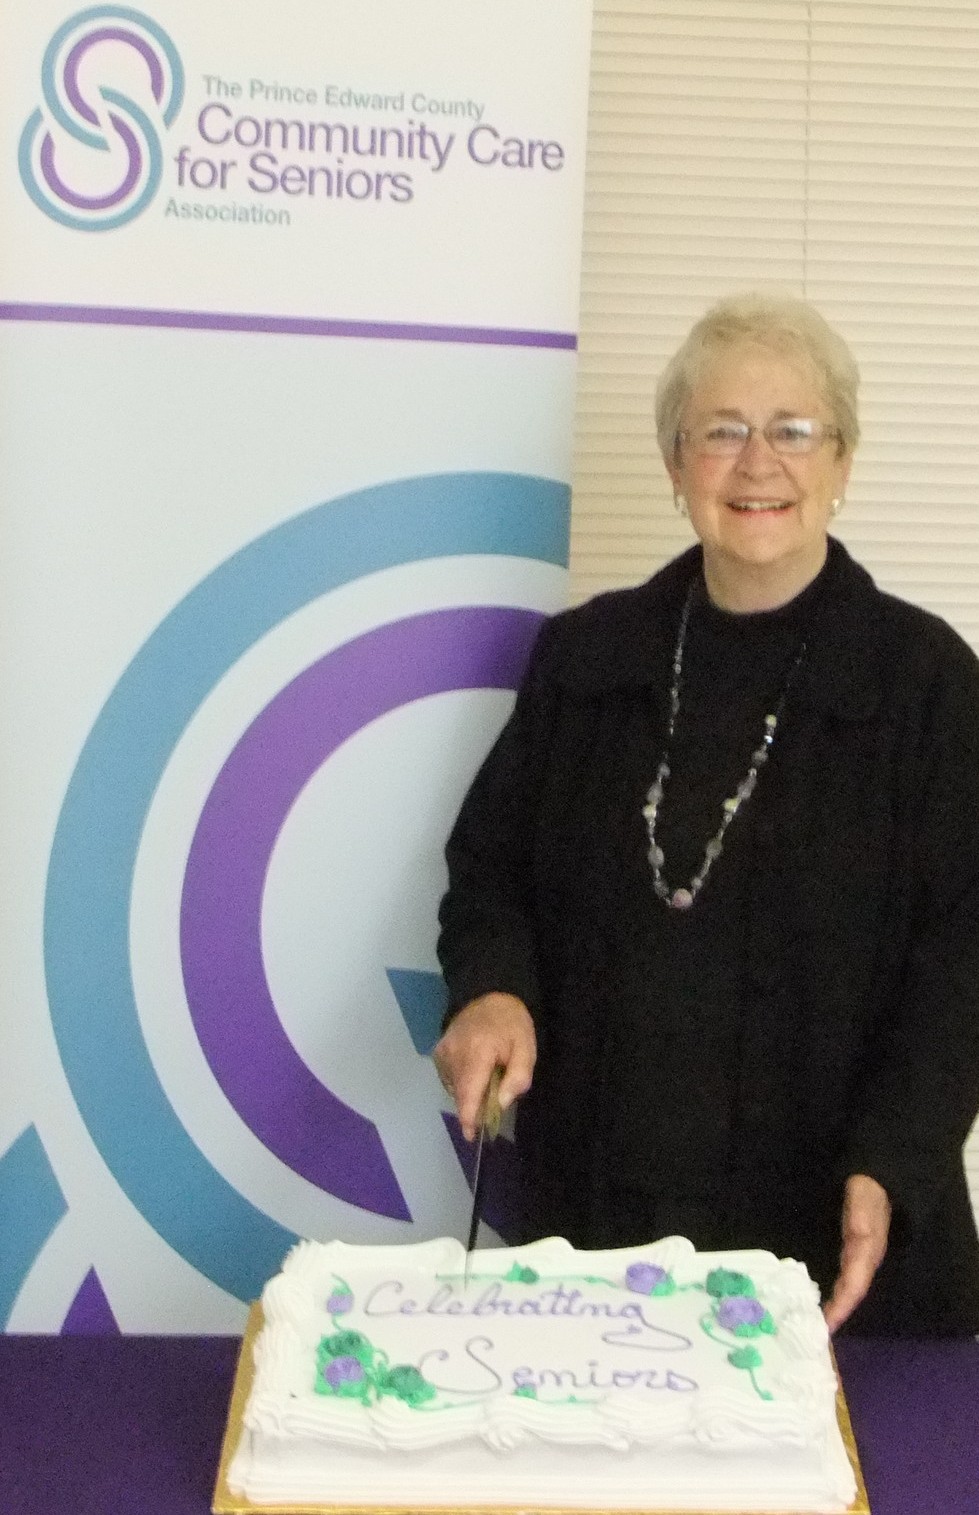 Maureen Finnegan, Founding President of Community Care's Foundation